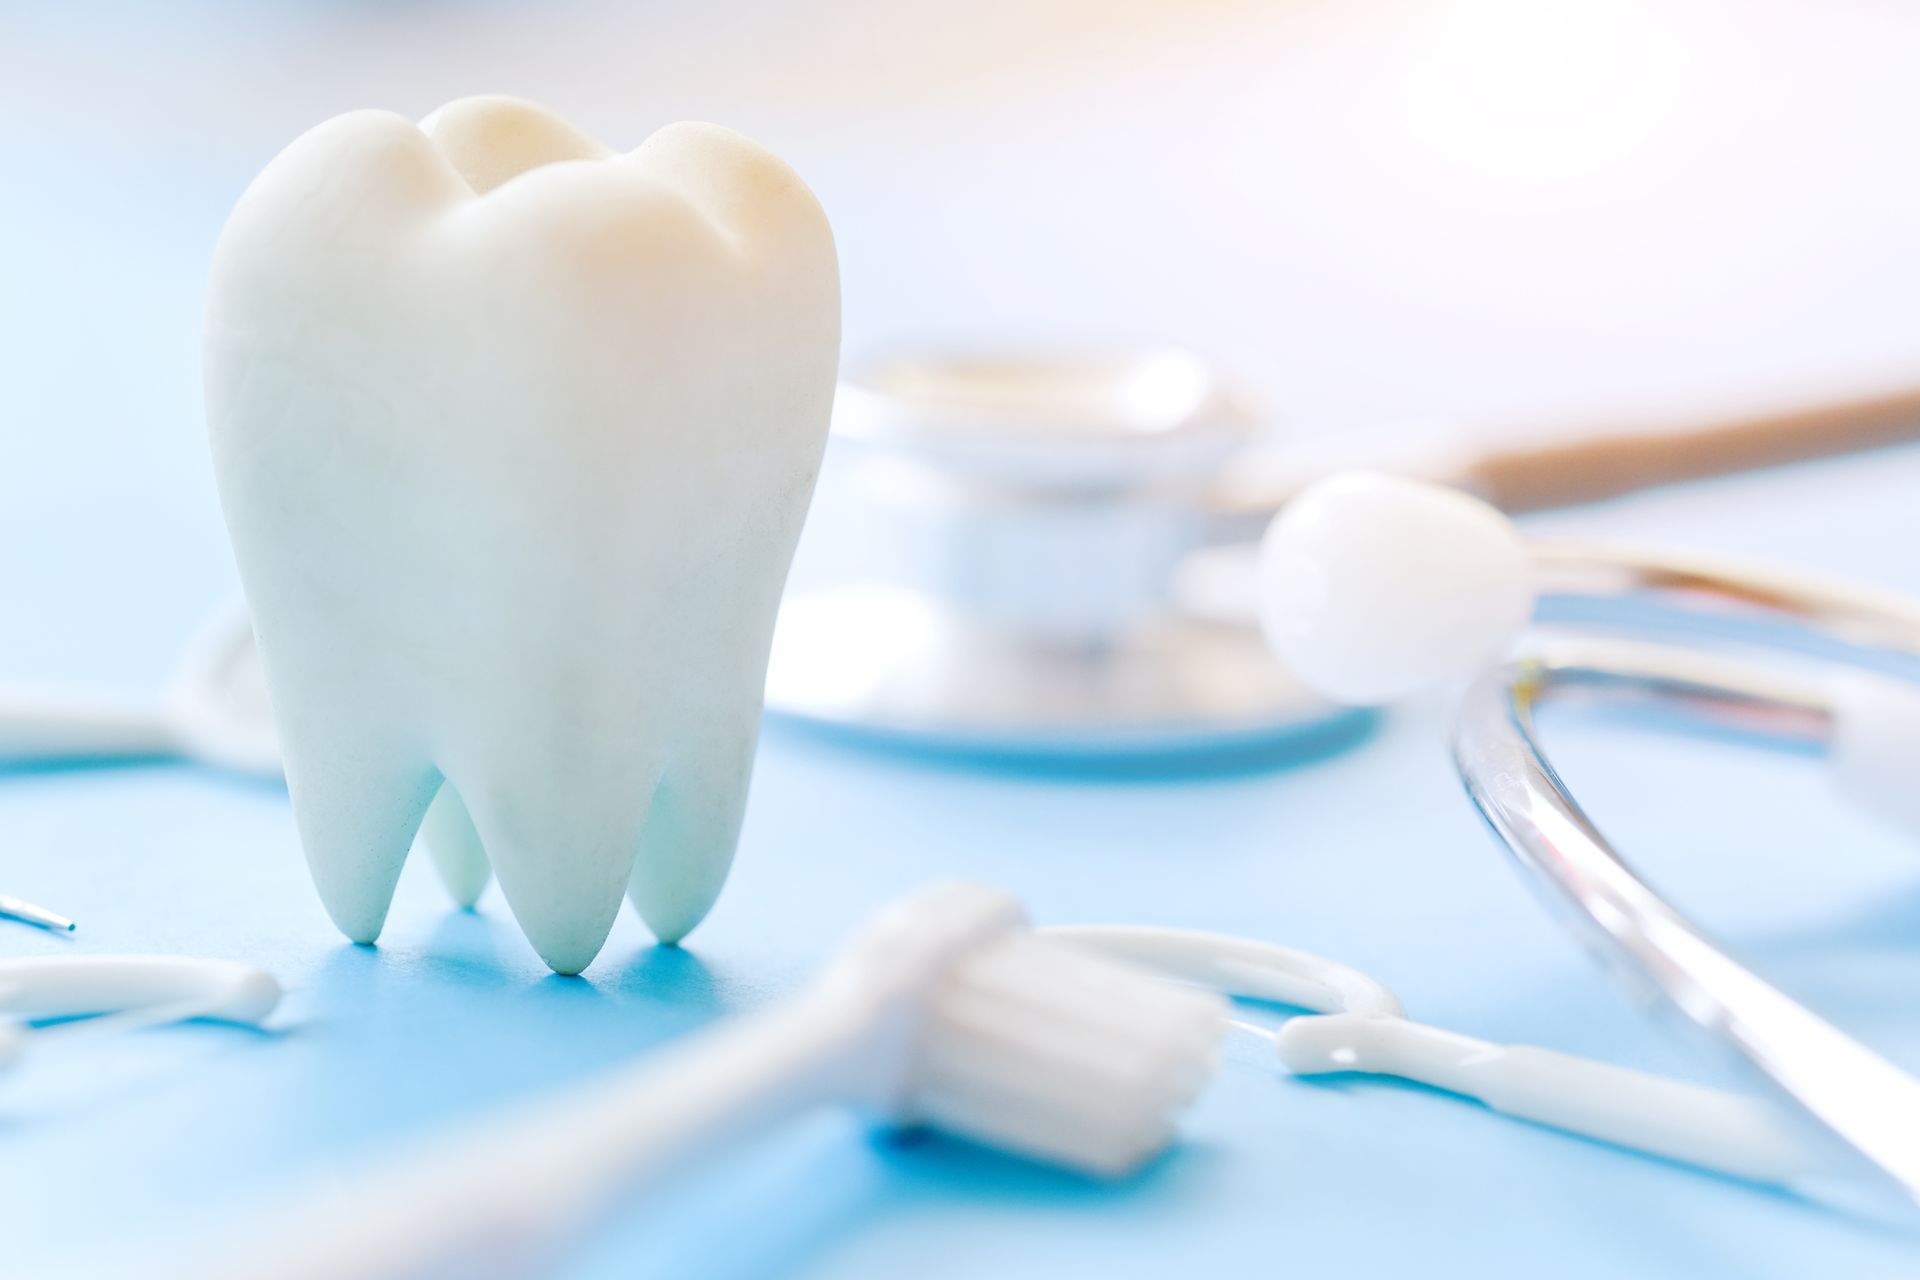 Dental model and dental equipment